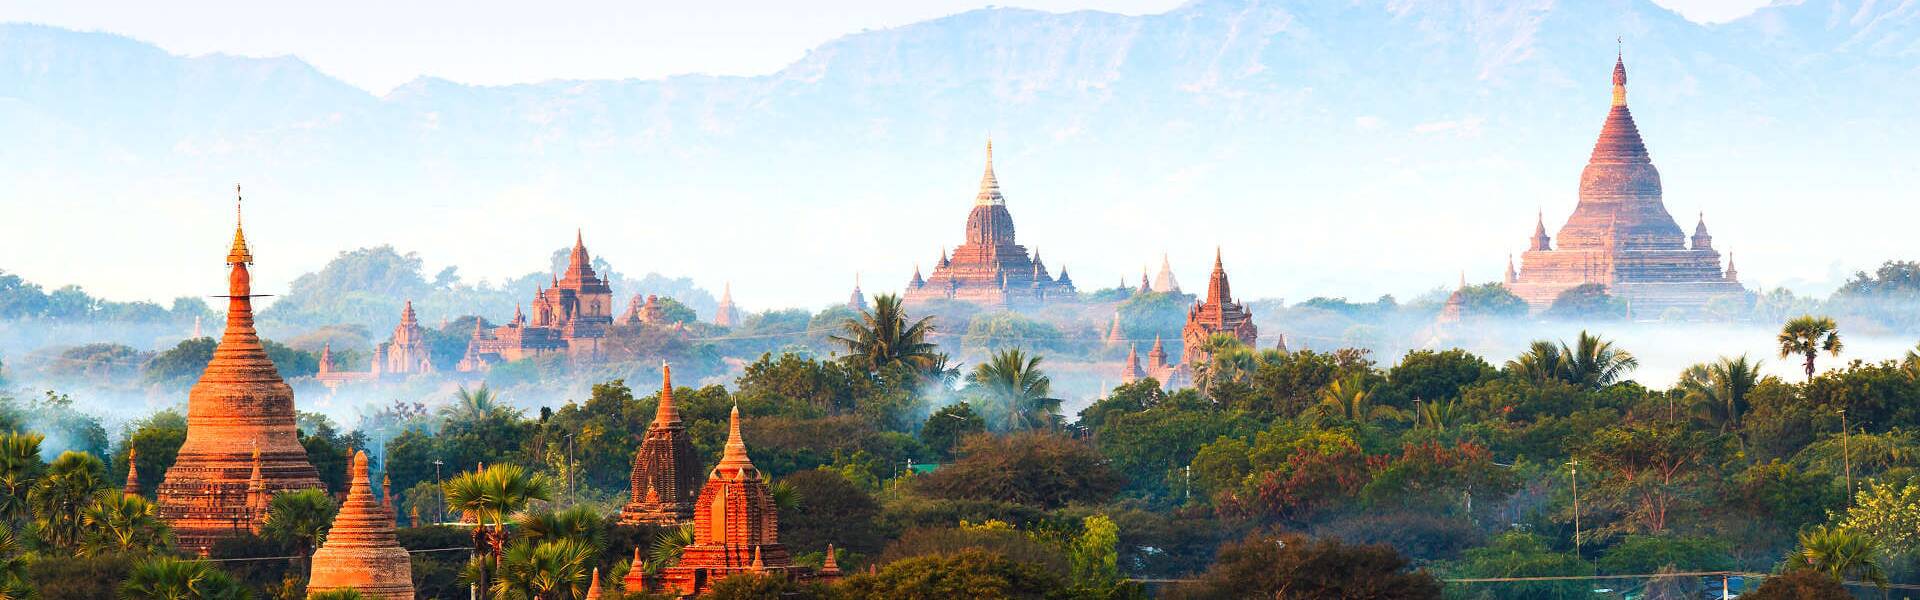 Myanmar Sehenswürdigkeiten die Sie in Ihrem Urlaub nicht verpassen sollten